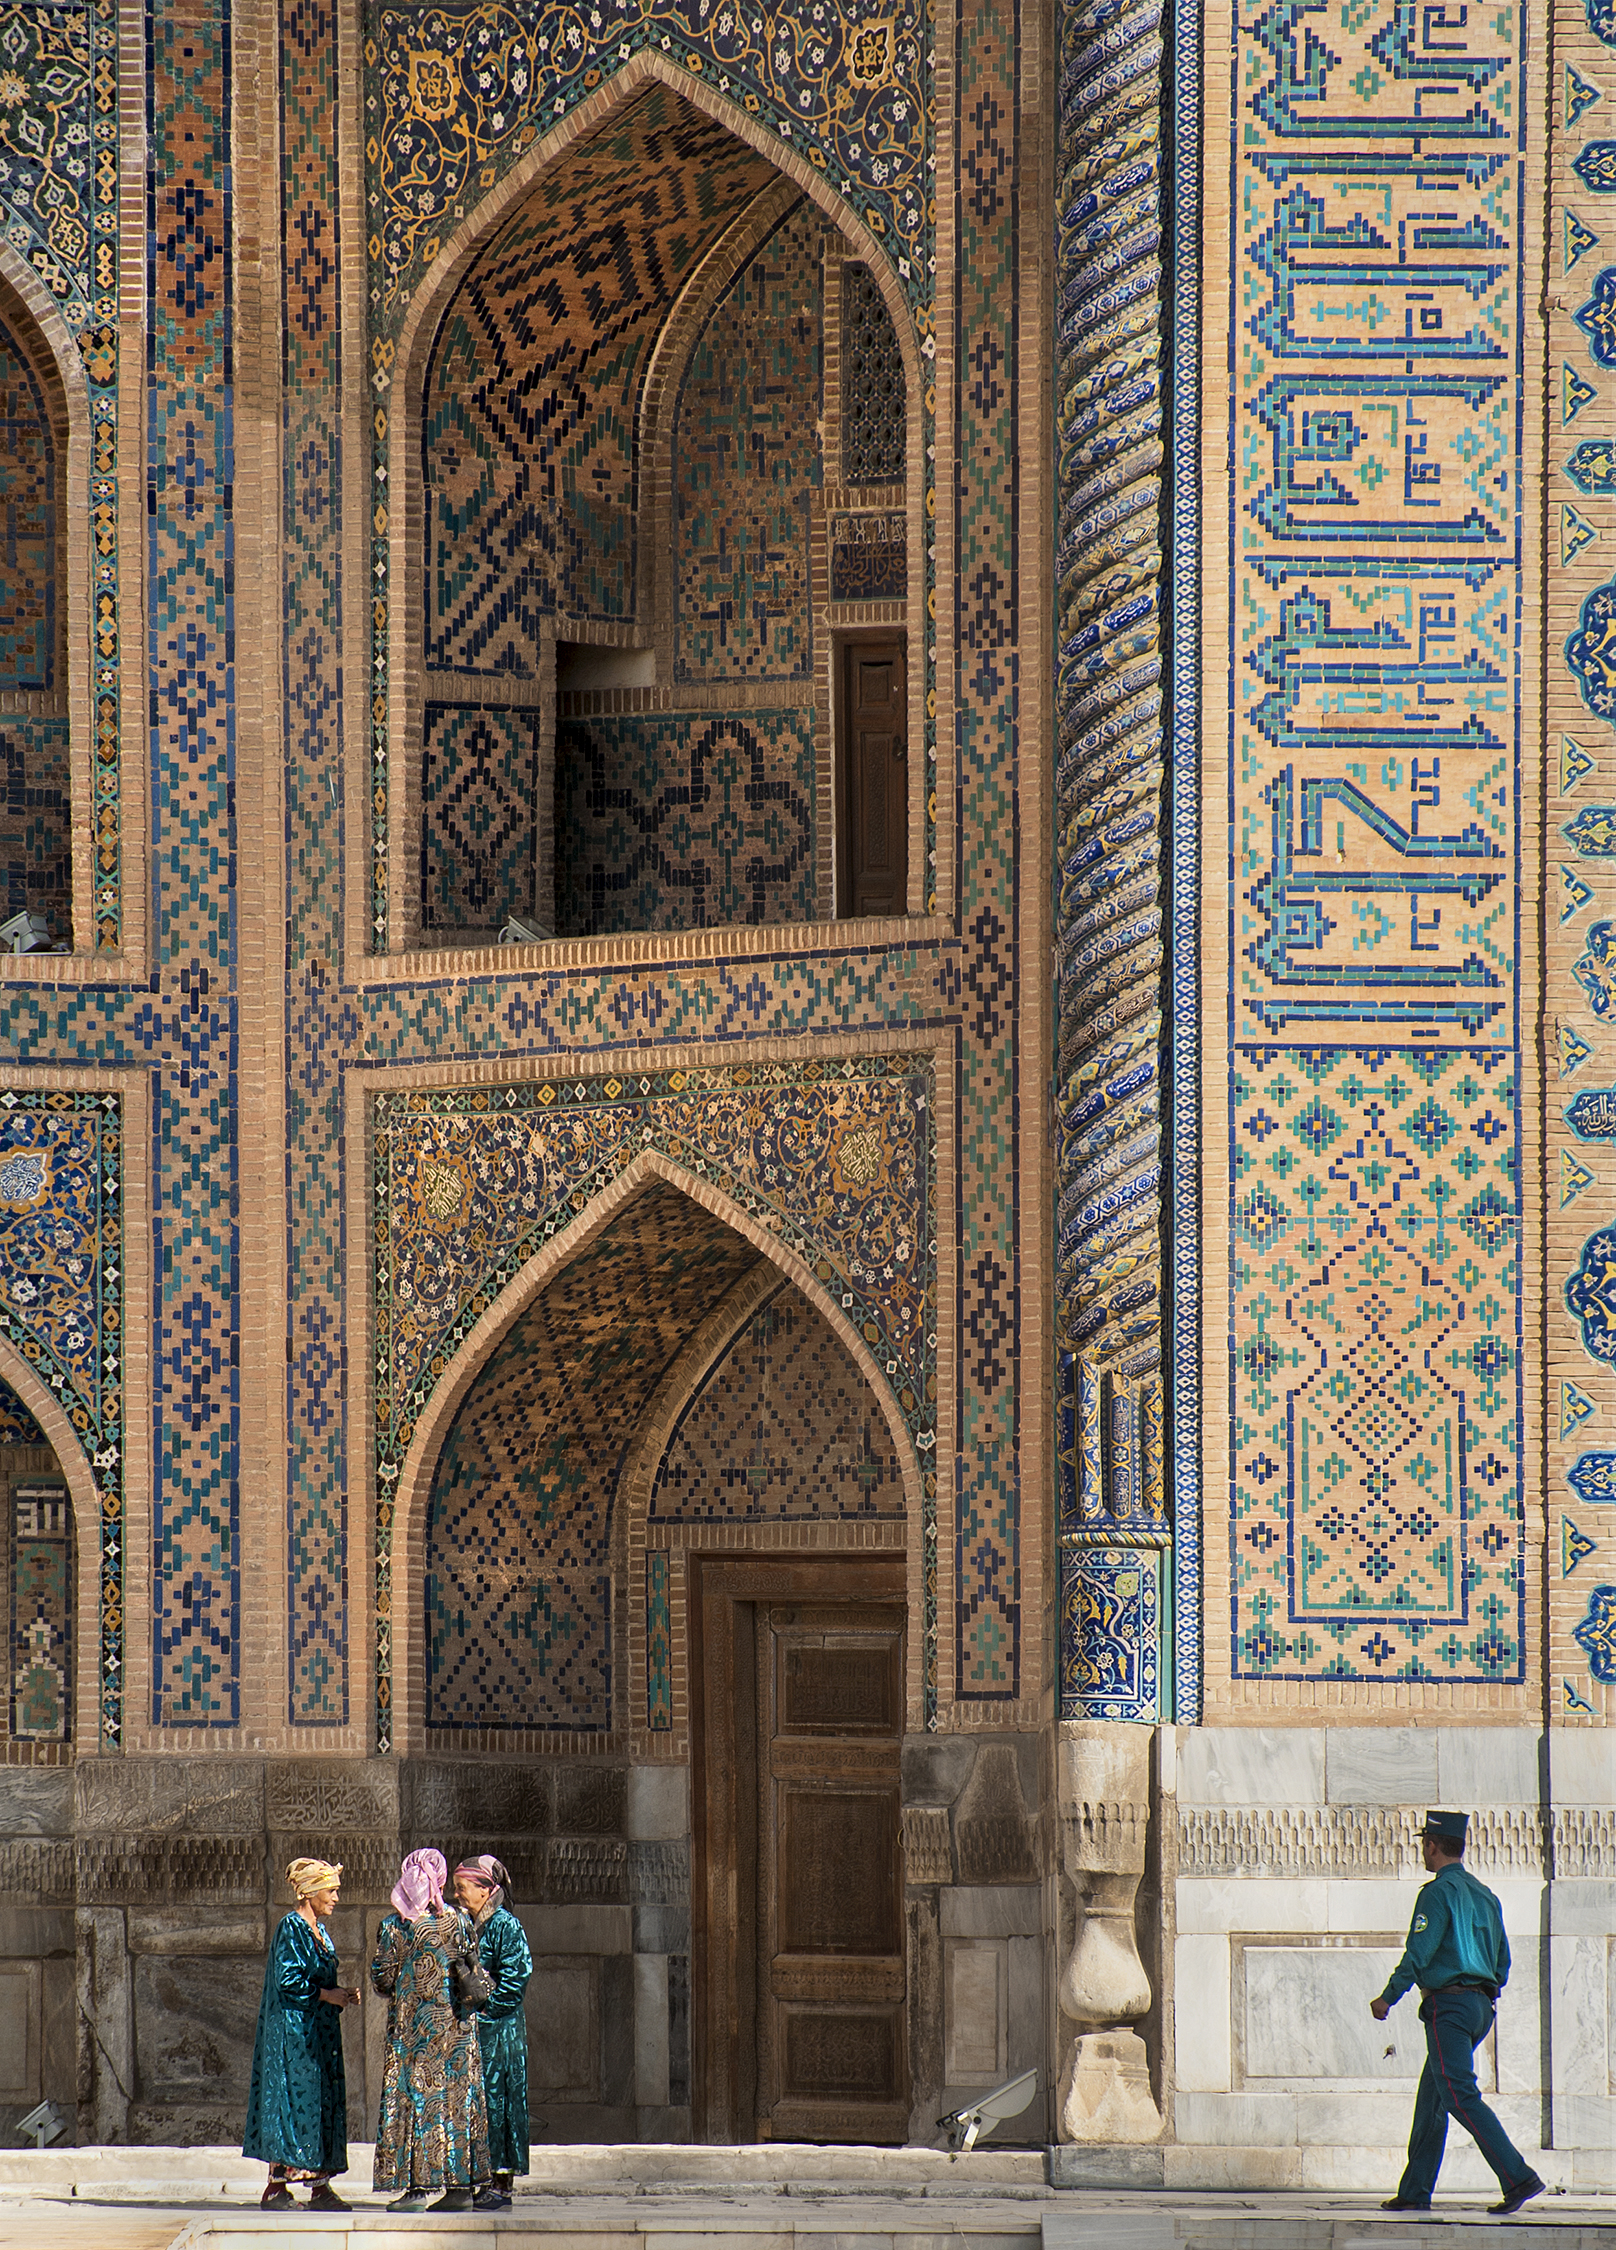 The Heart of Samarkand